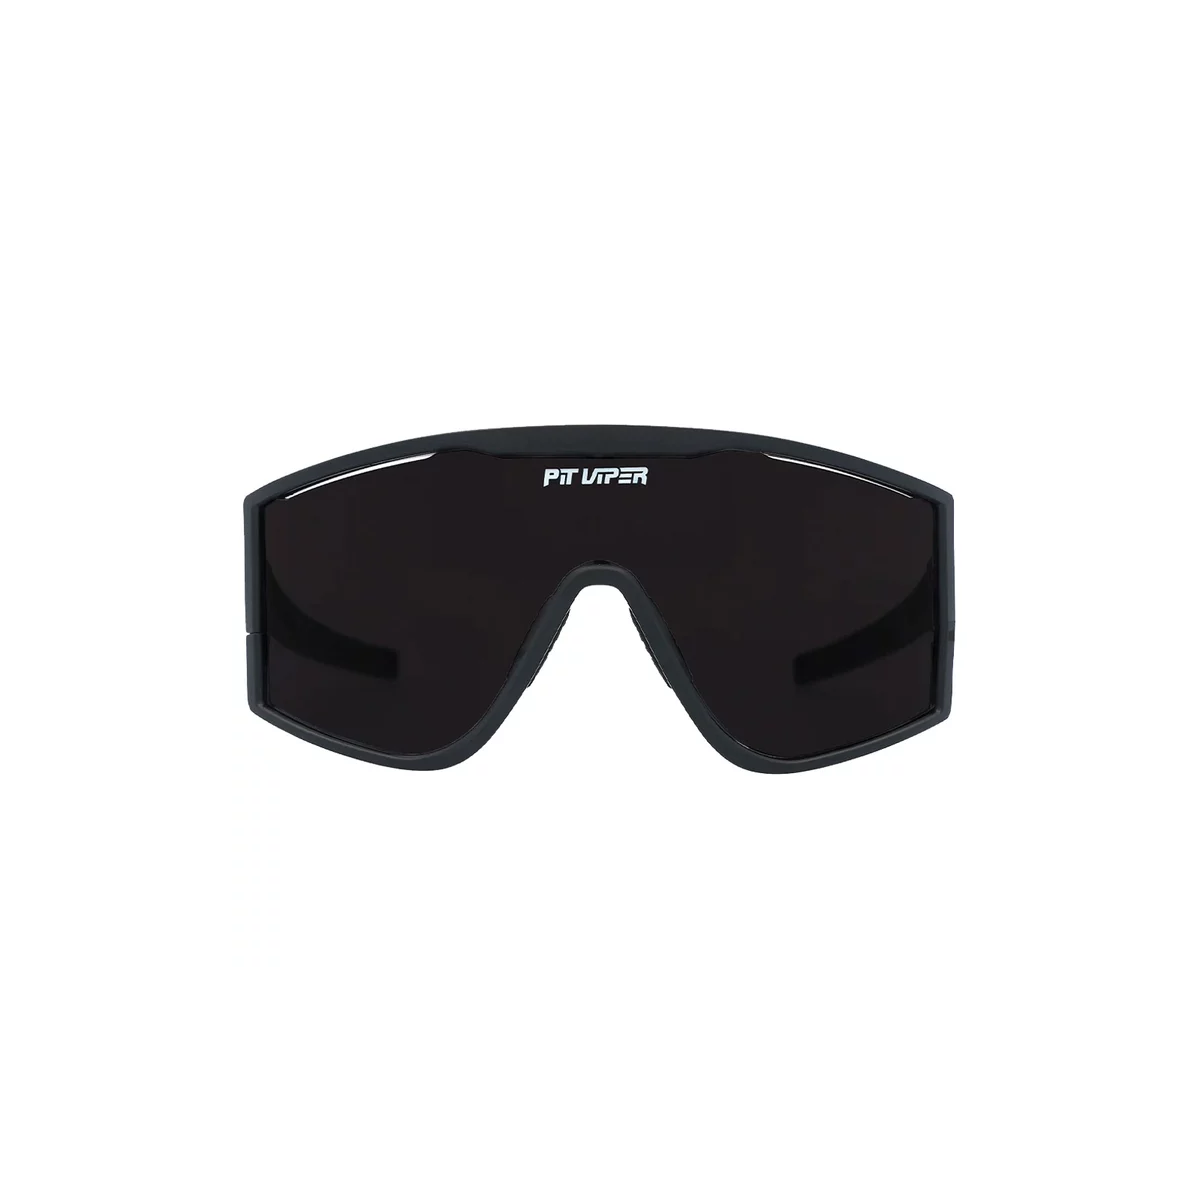 Gafas de sol para ciclismo o mtb Pit Viper The Try Hard The Standard en color negro